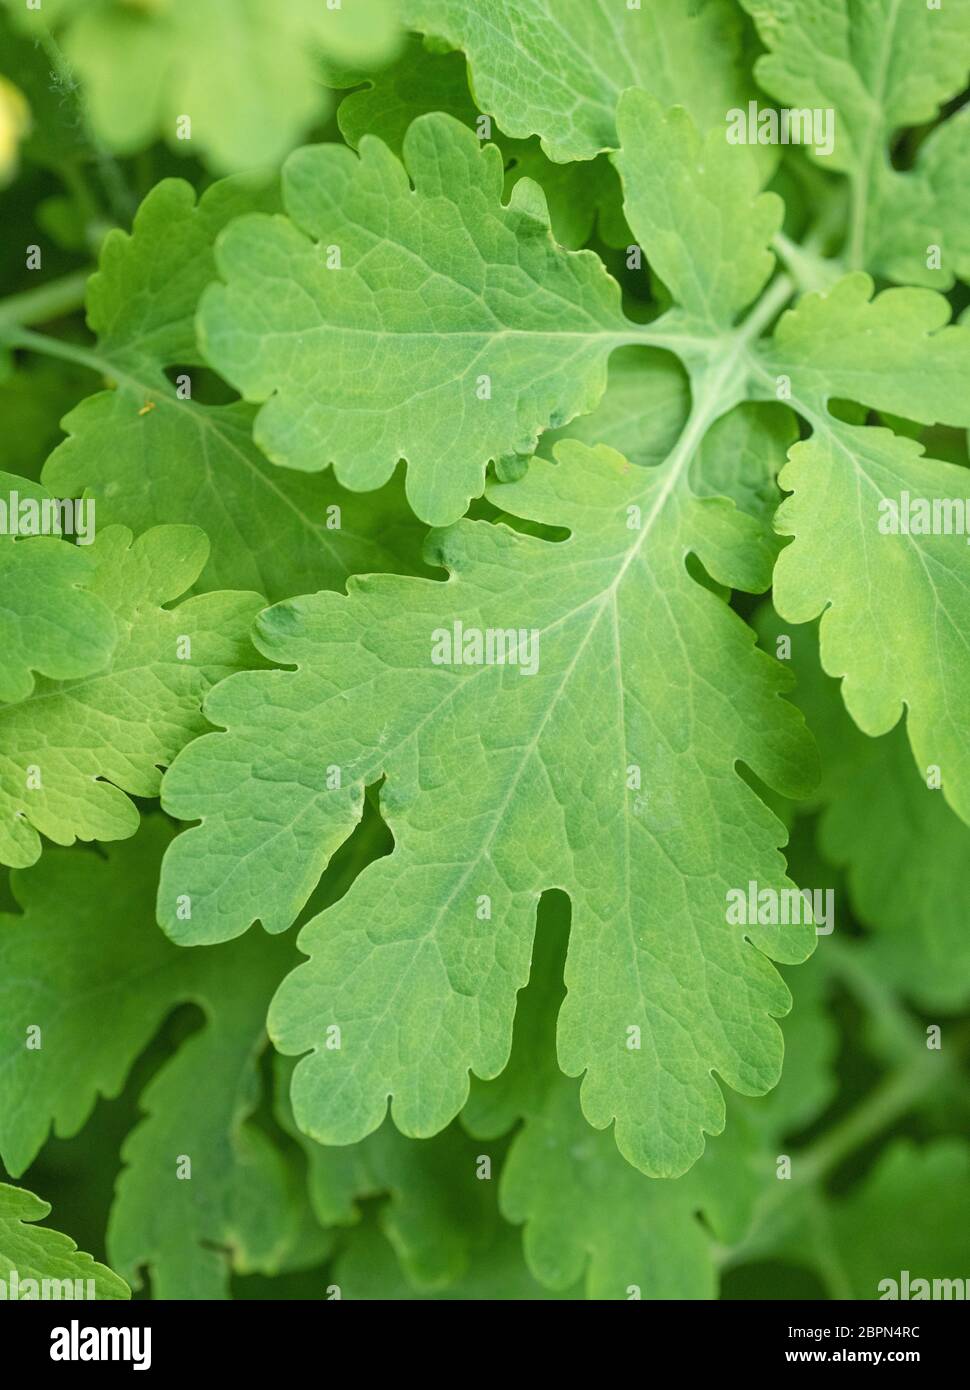 Nahaufnahme der Blätter des Großkelandins / Chelidonium majus im Schatten, und zeigt deutliche Blattrand. Ehemalige Heilpflanze mit lebhaftem gelben saft. Stockfoto